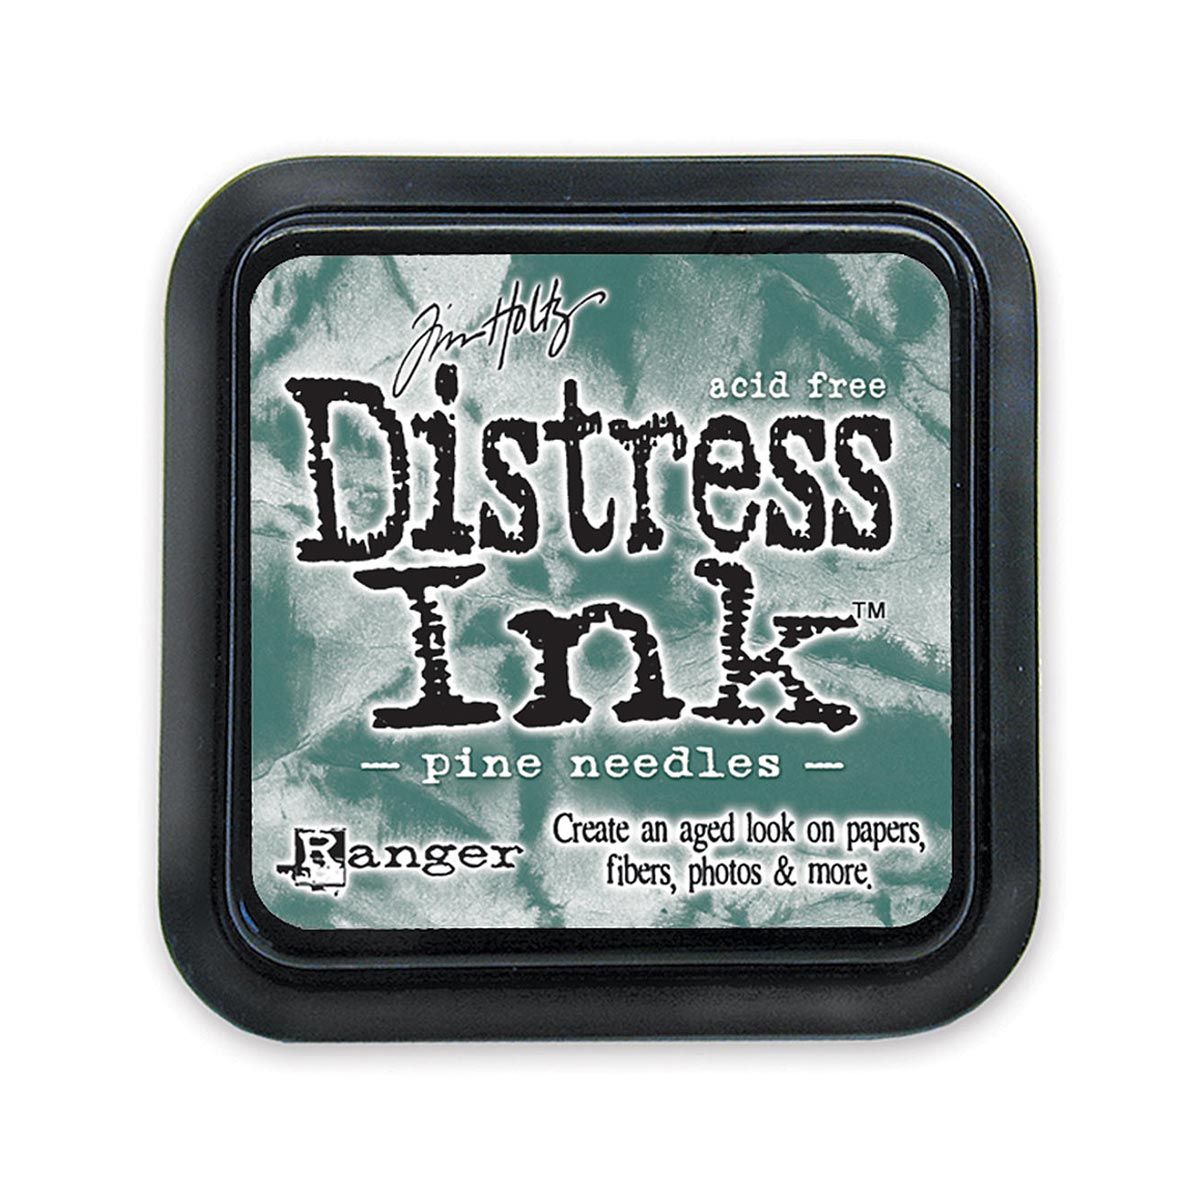 Tim Holtz Mini Distress Ink Pad Pine Needles 1x1 inch